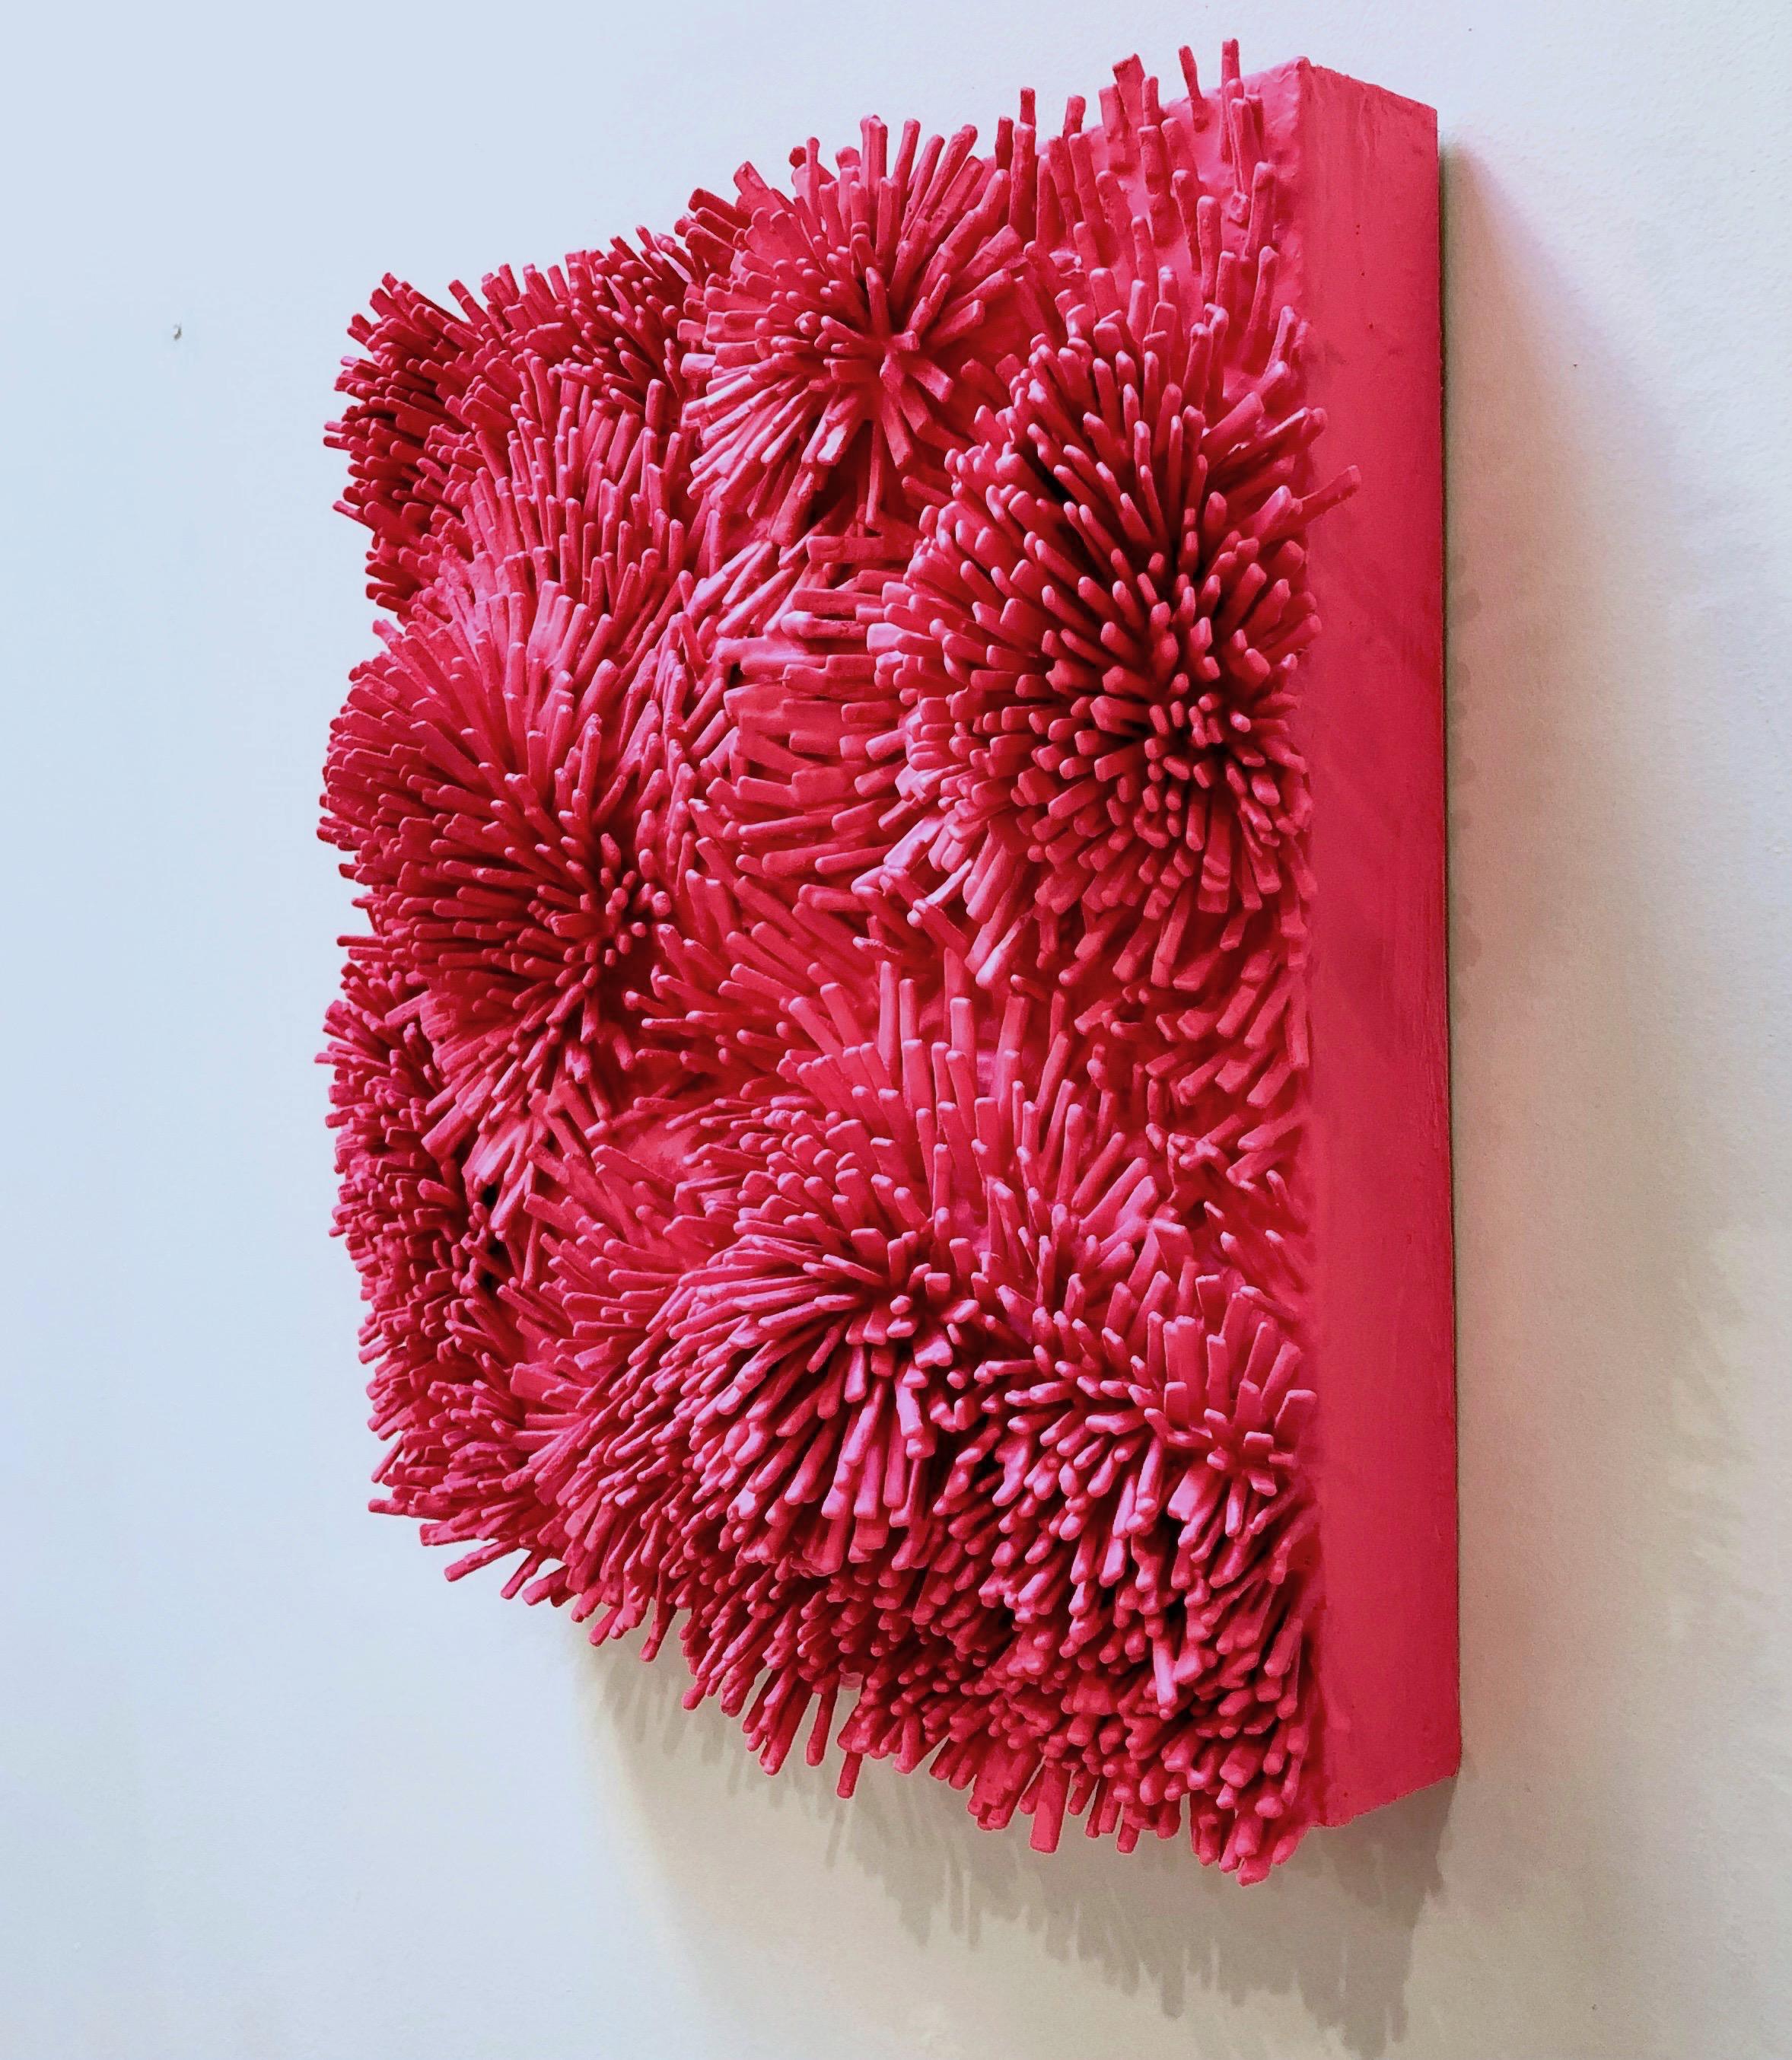 abstract foam sculpture